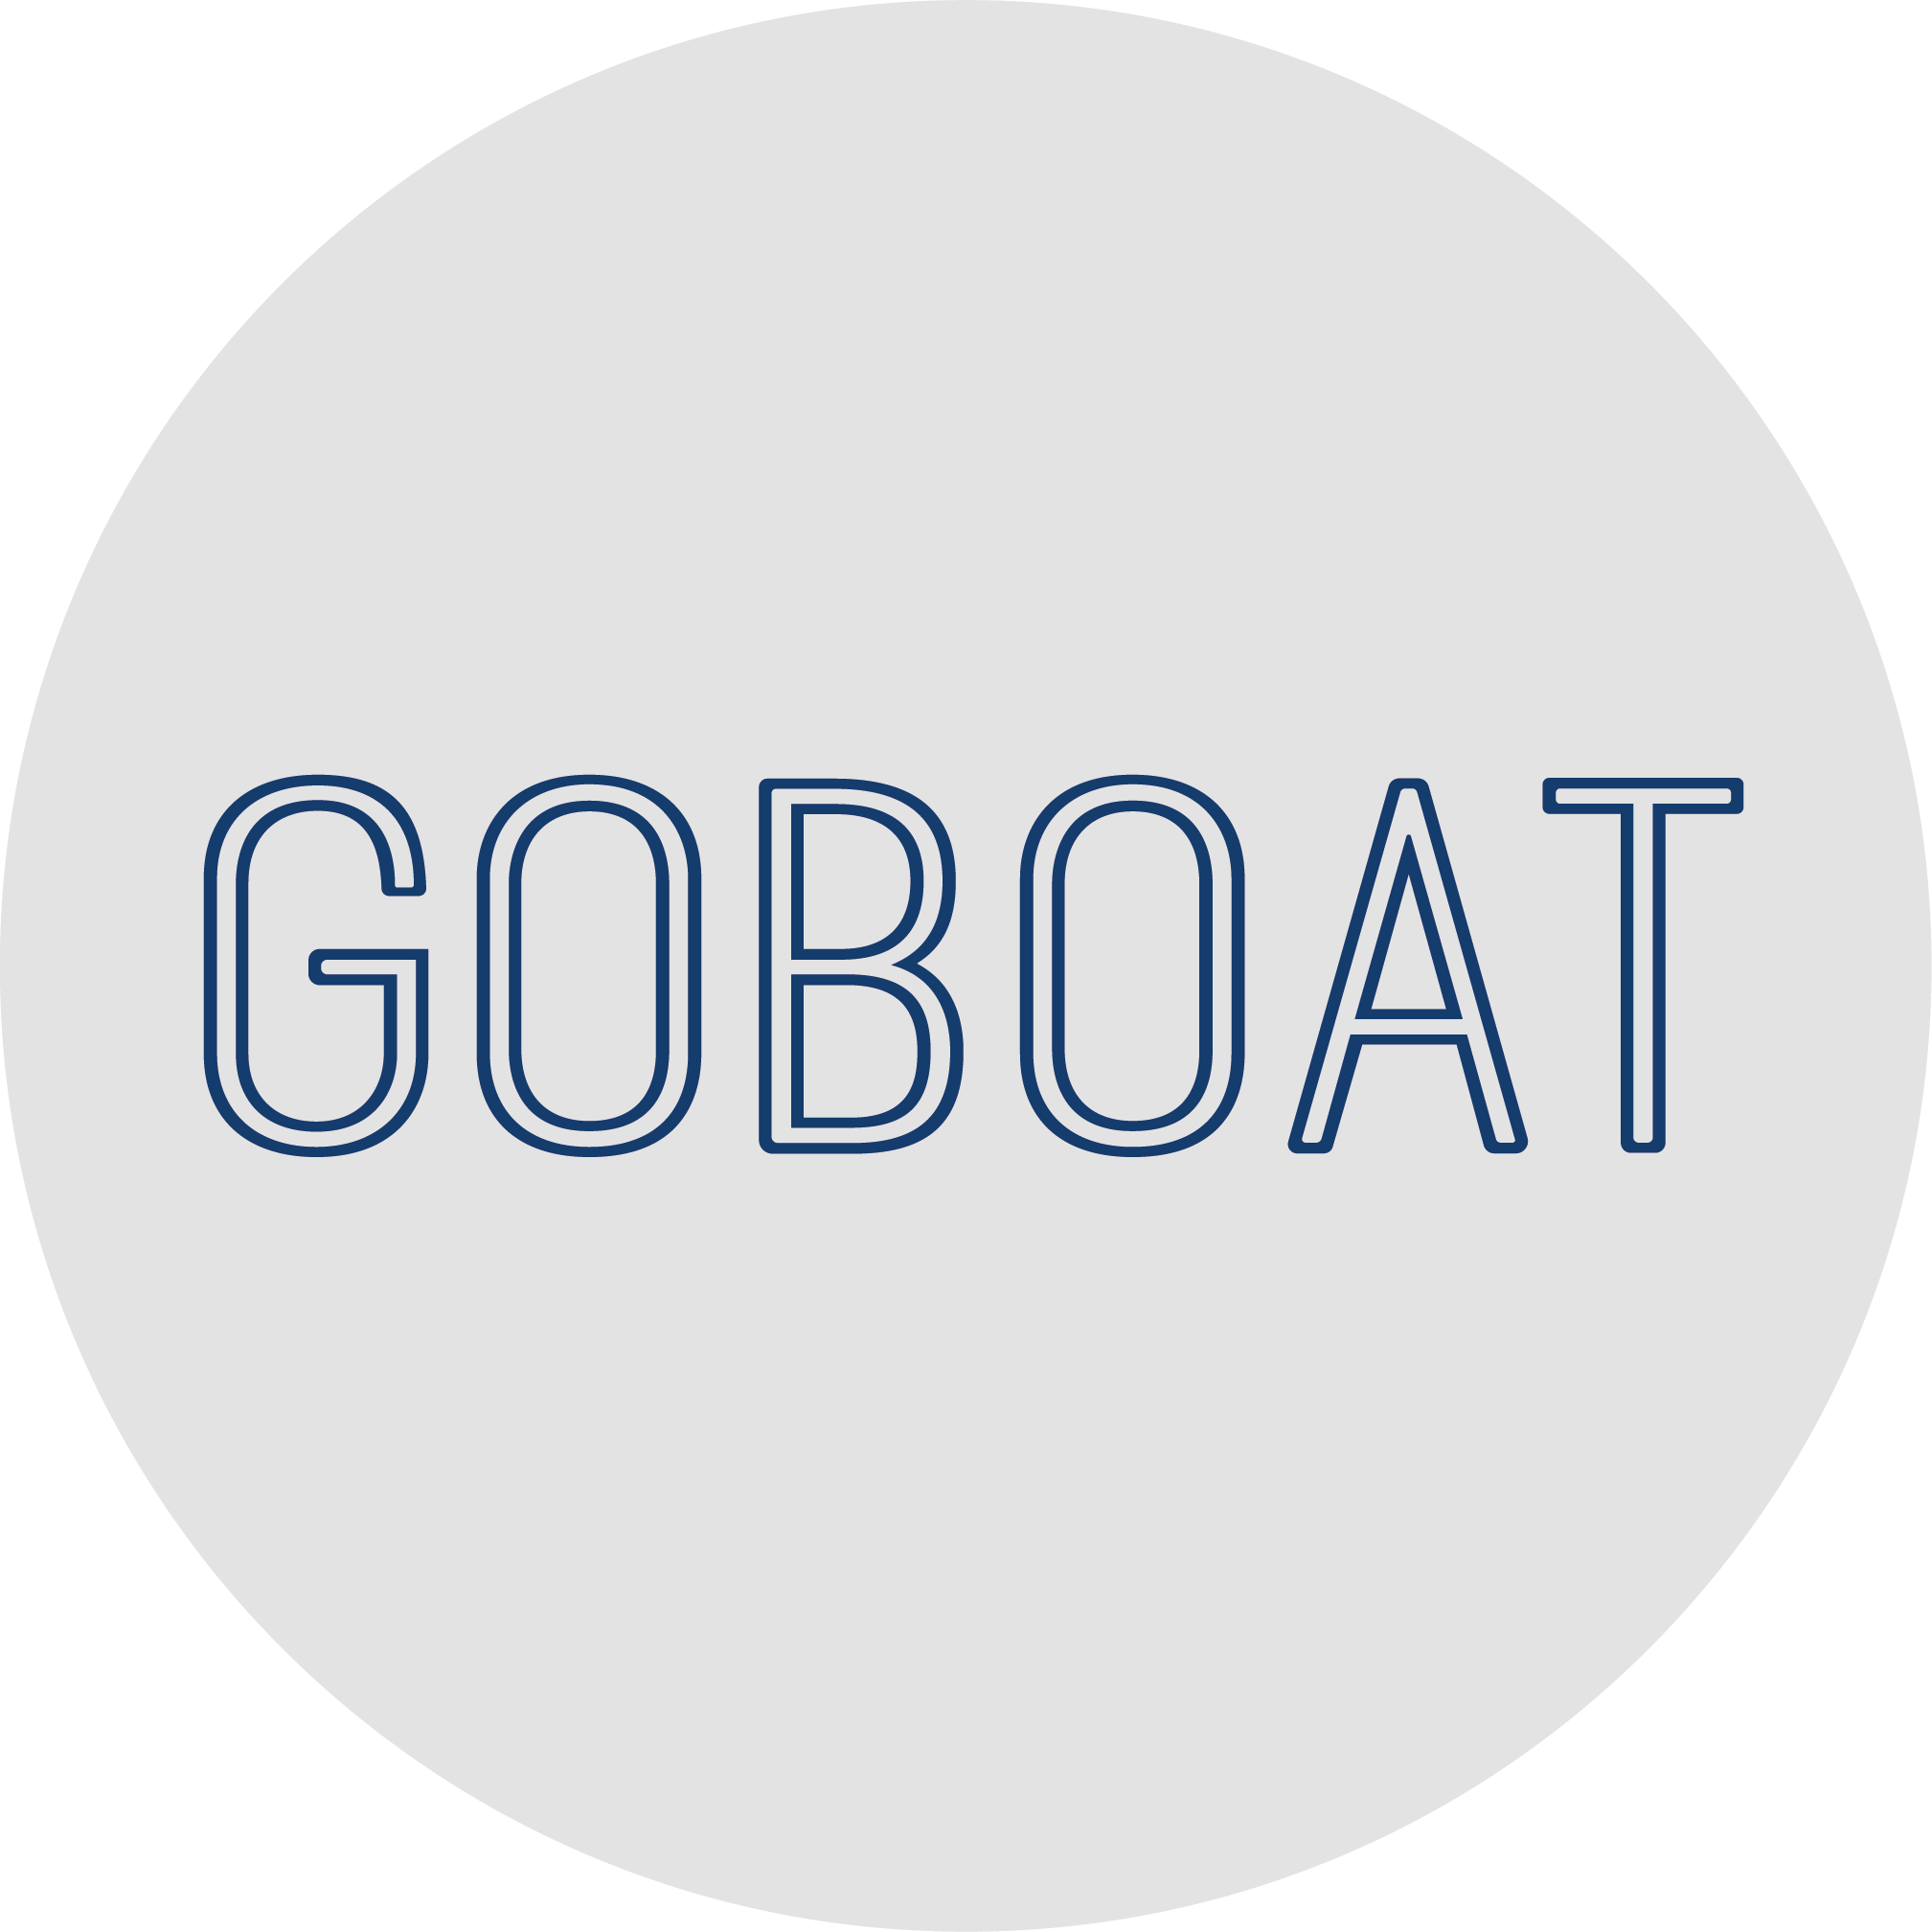 Nyd byen fra vandsiden med GoBoat